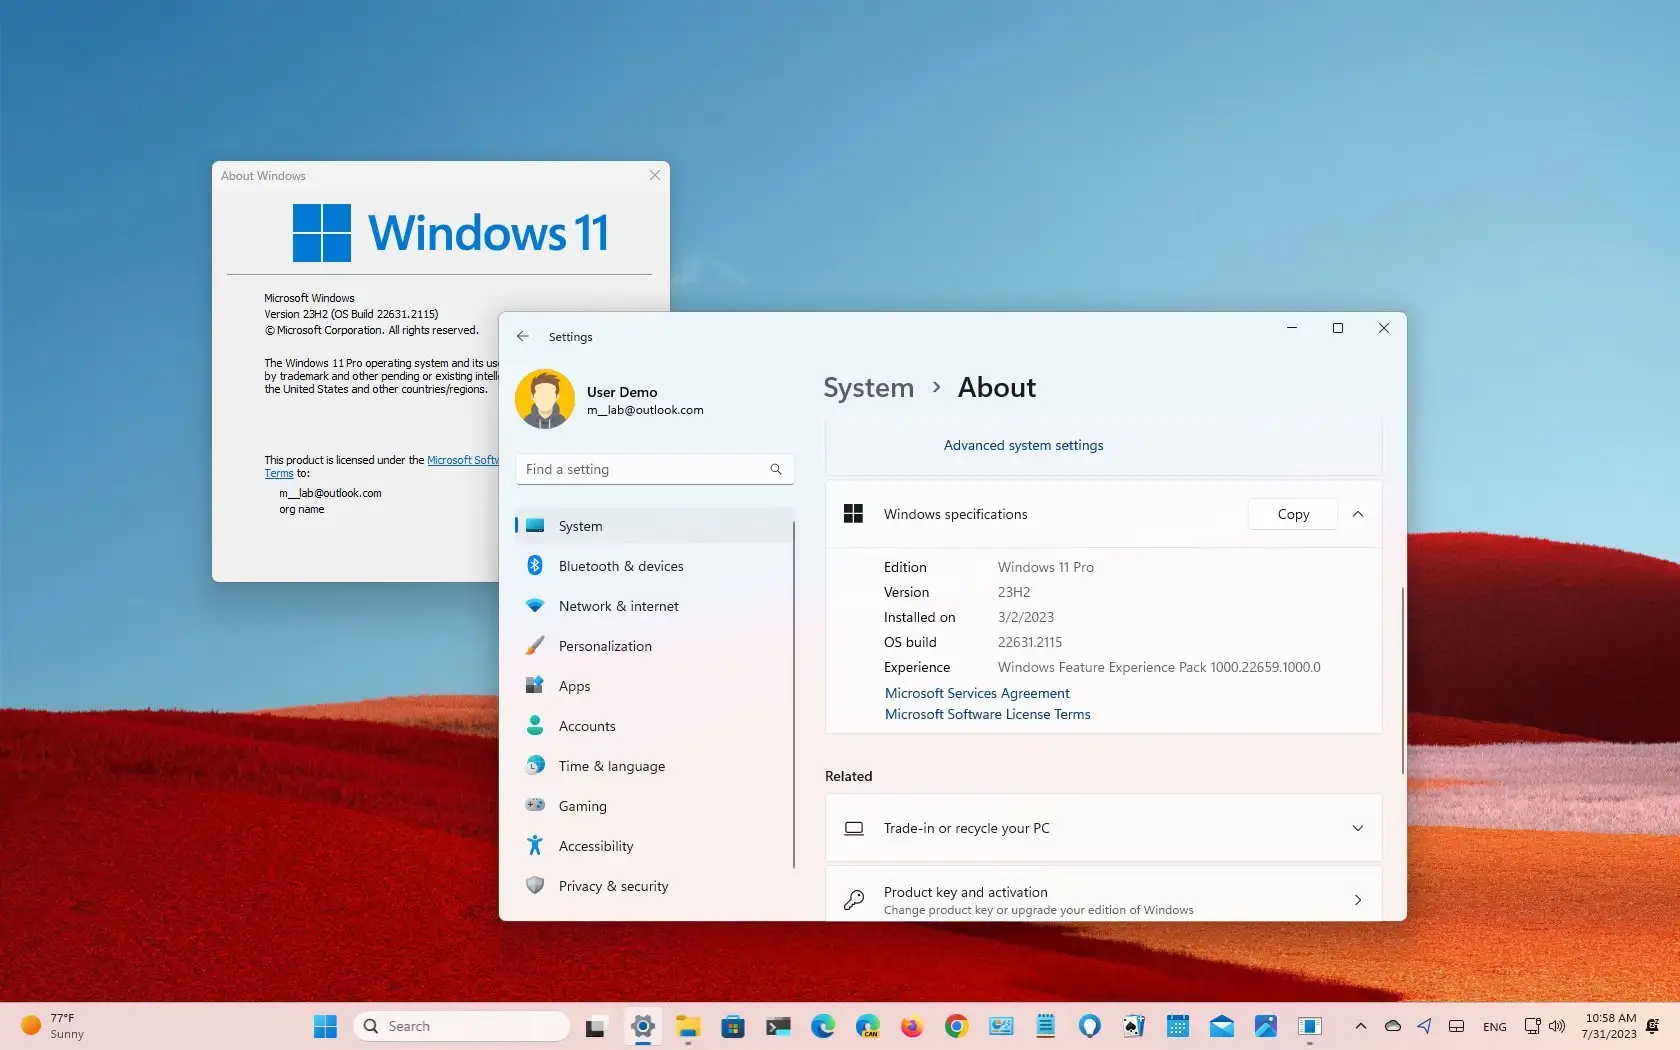 Windows 11 23H2 BETA 